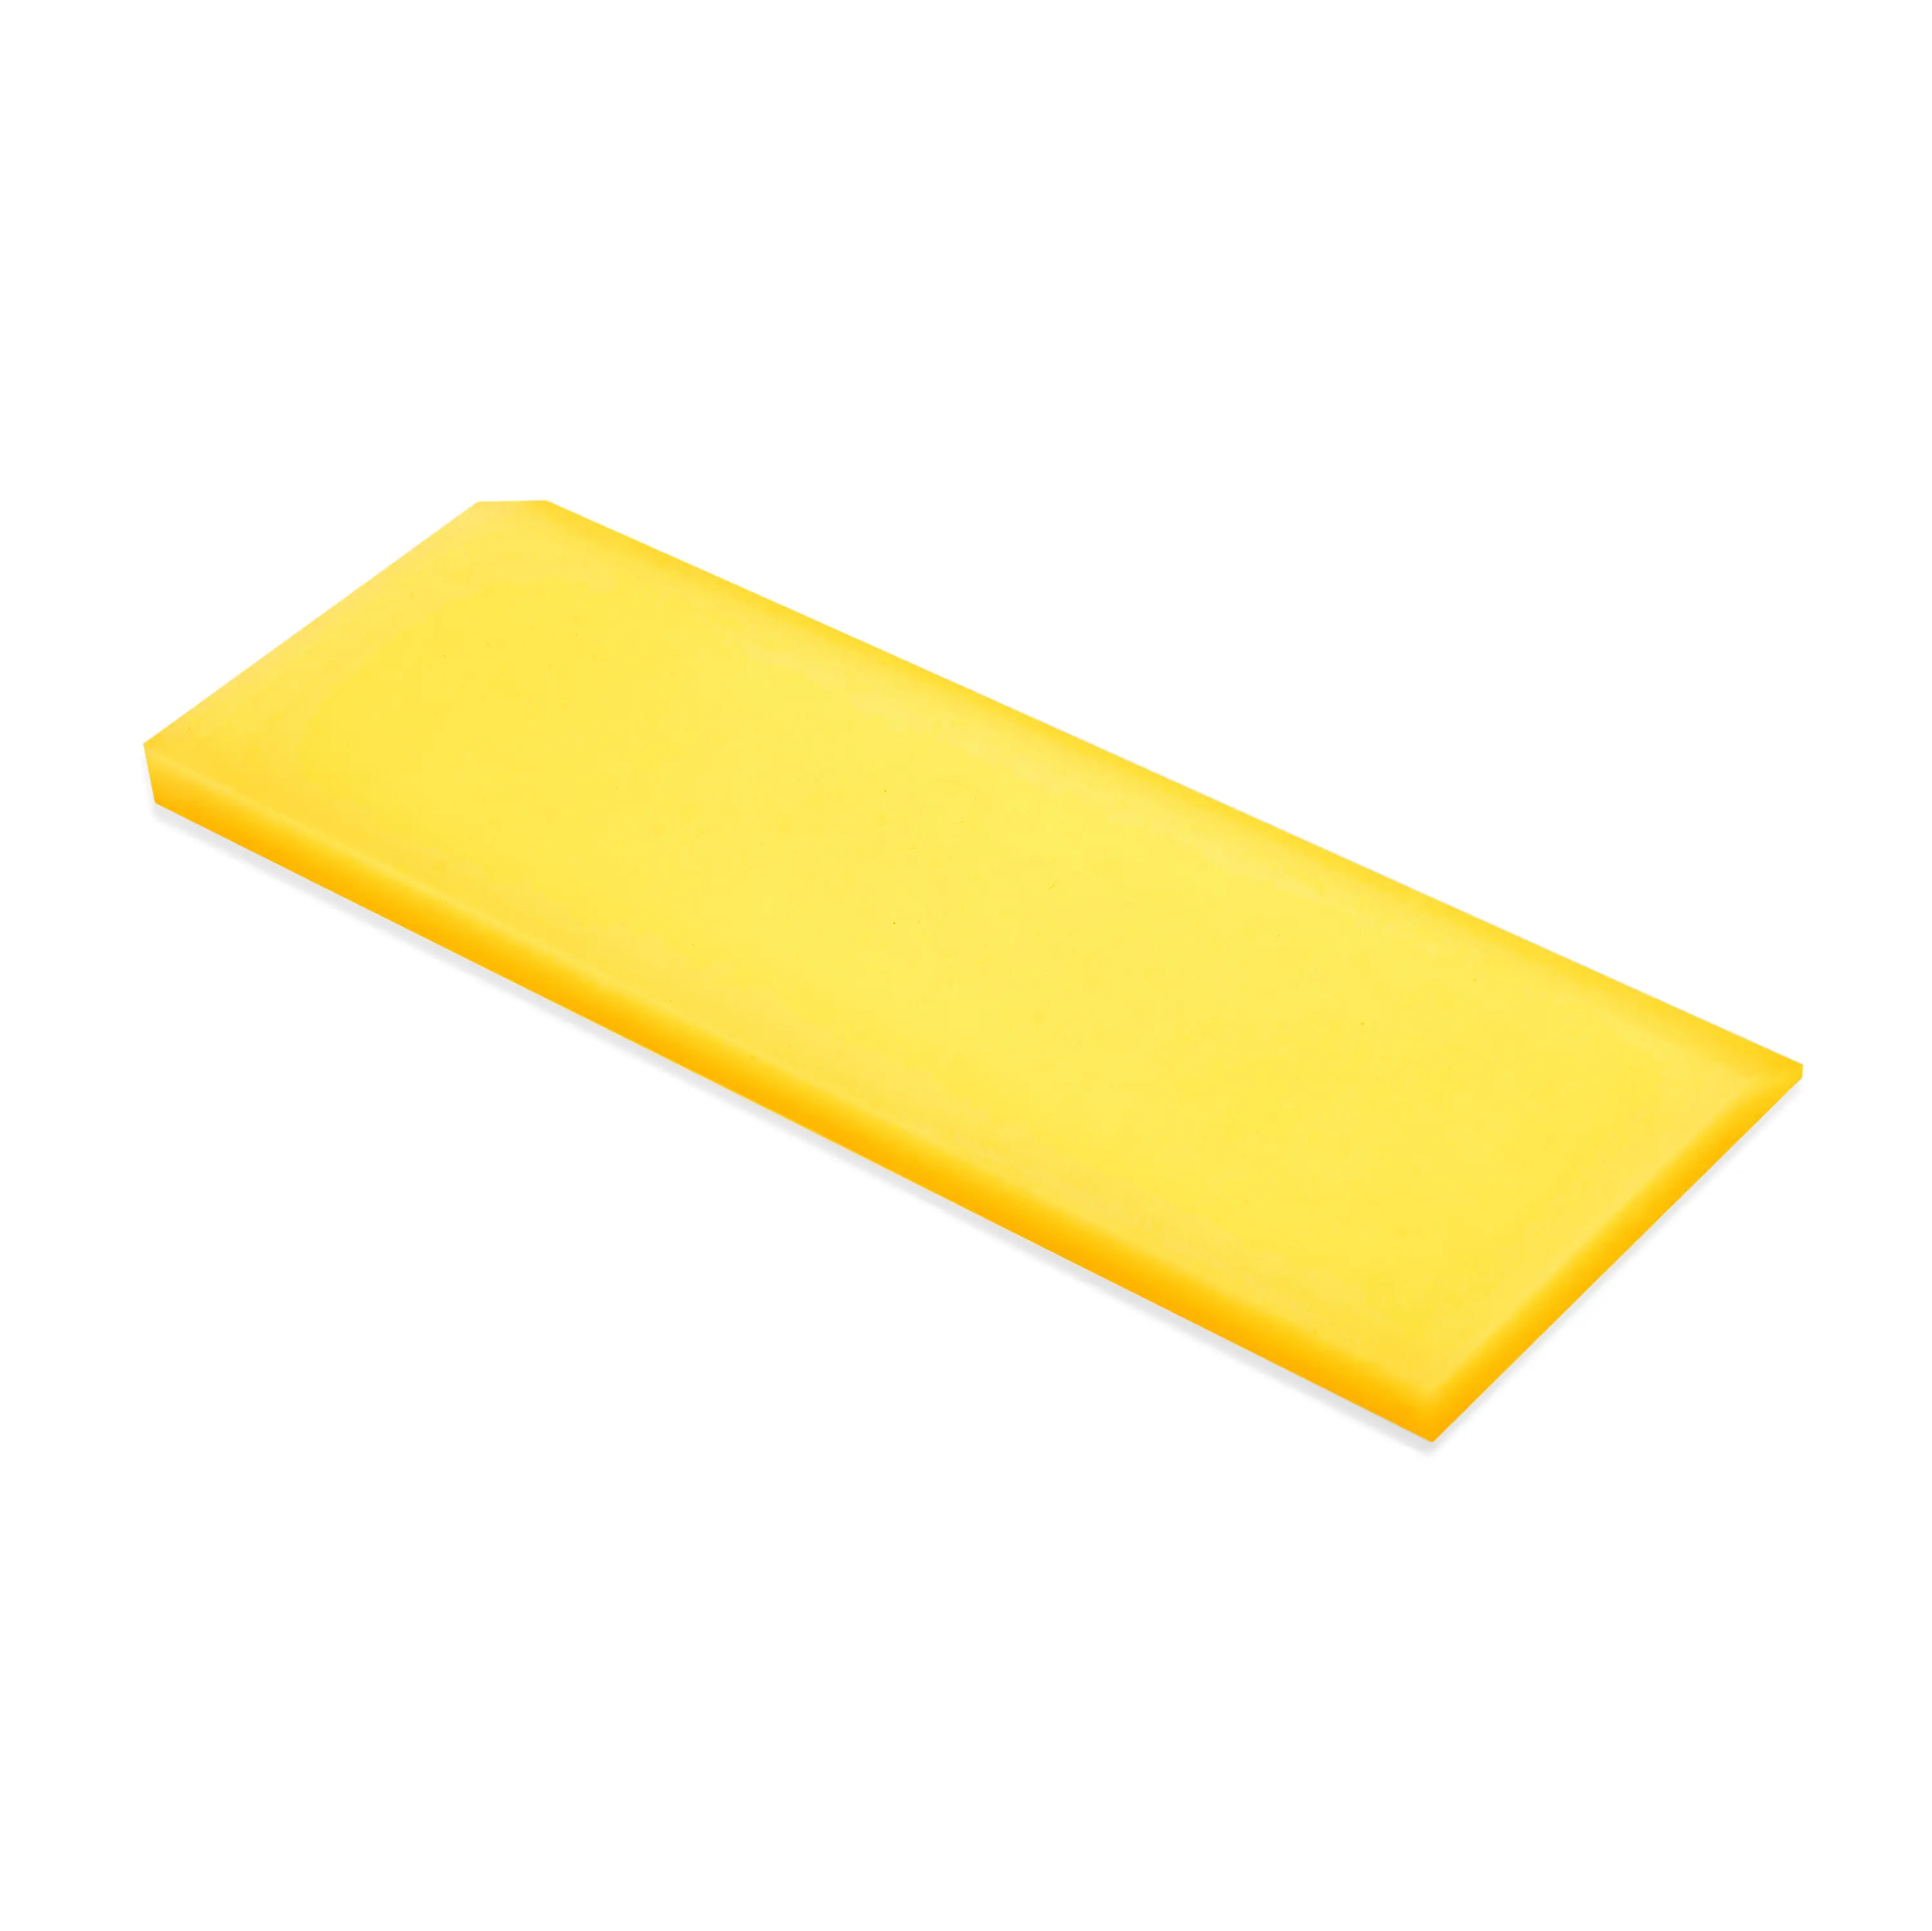 Выгонка Yellow Max, 5x12,7 см